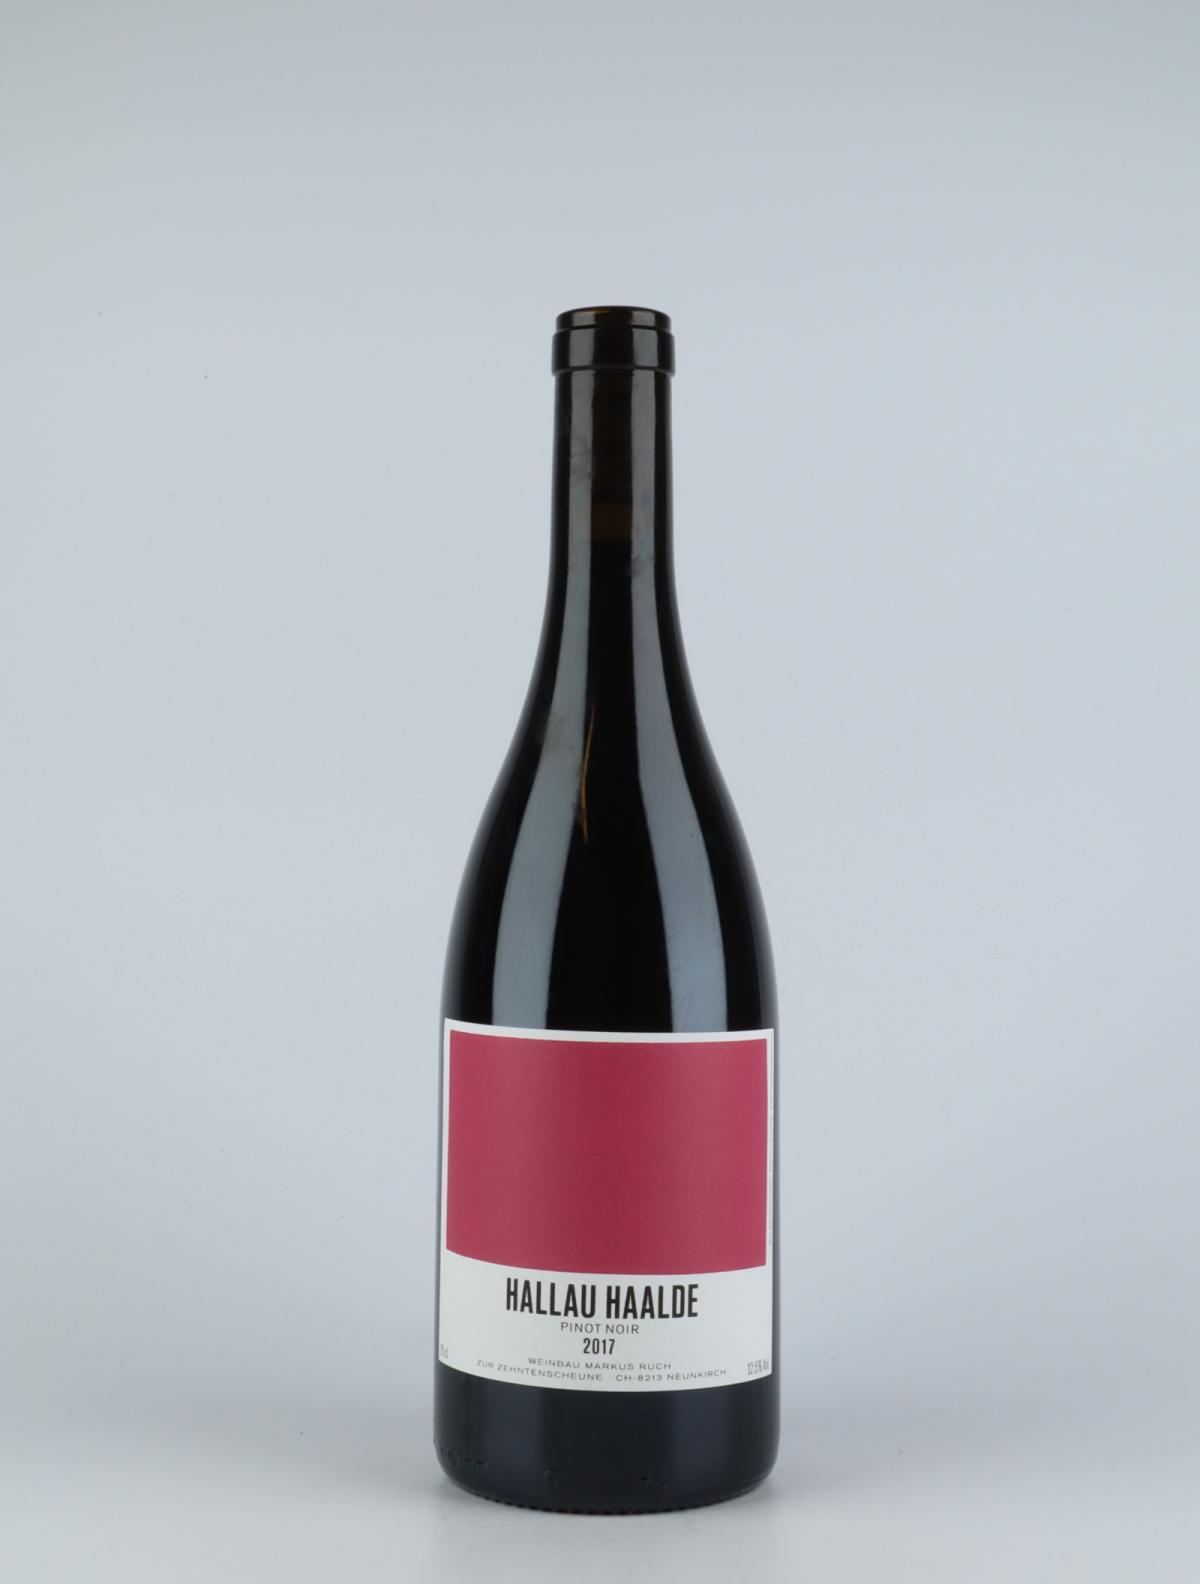 En flaske 2017 Hallau Haalde Rødvin fra Markus Ruch, Schaffhausen i Schweiz